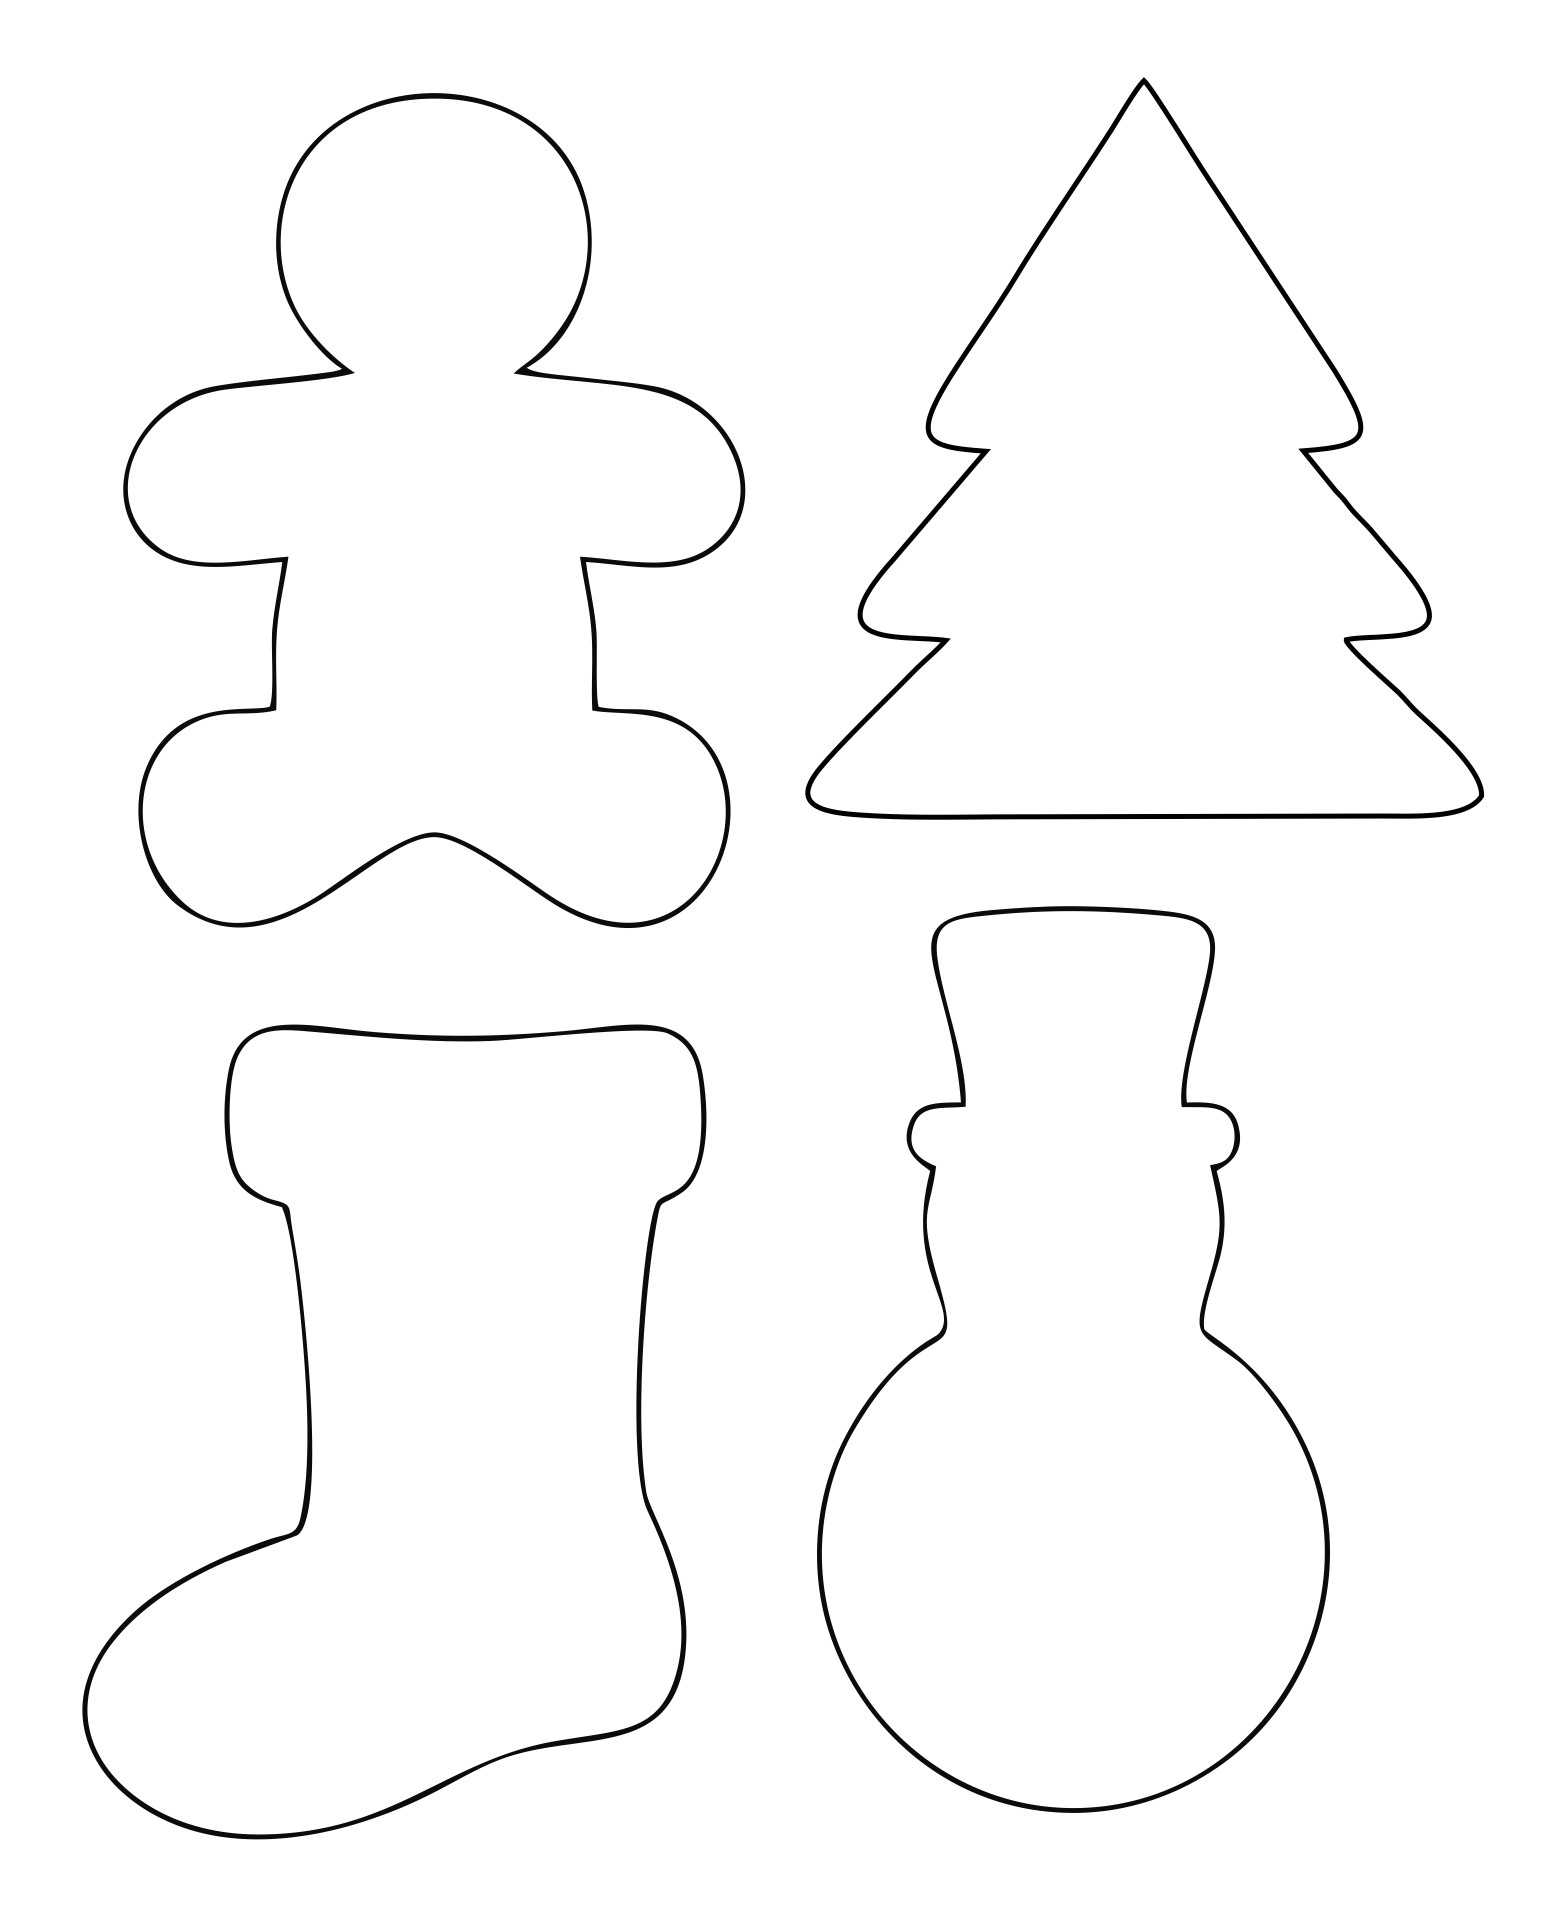 Printable Christmas Ornament Shapes_30148